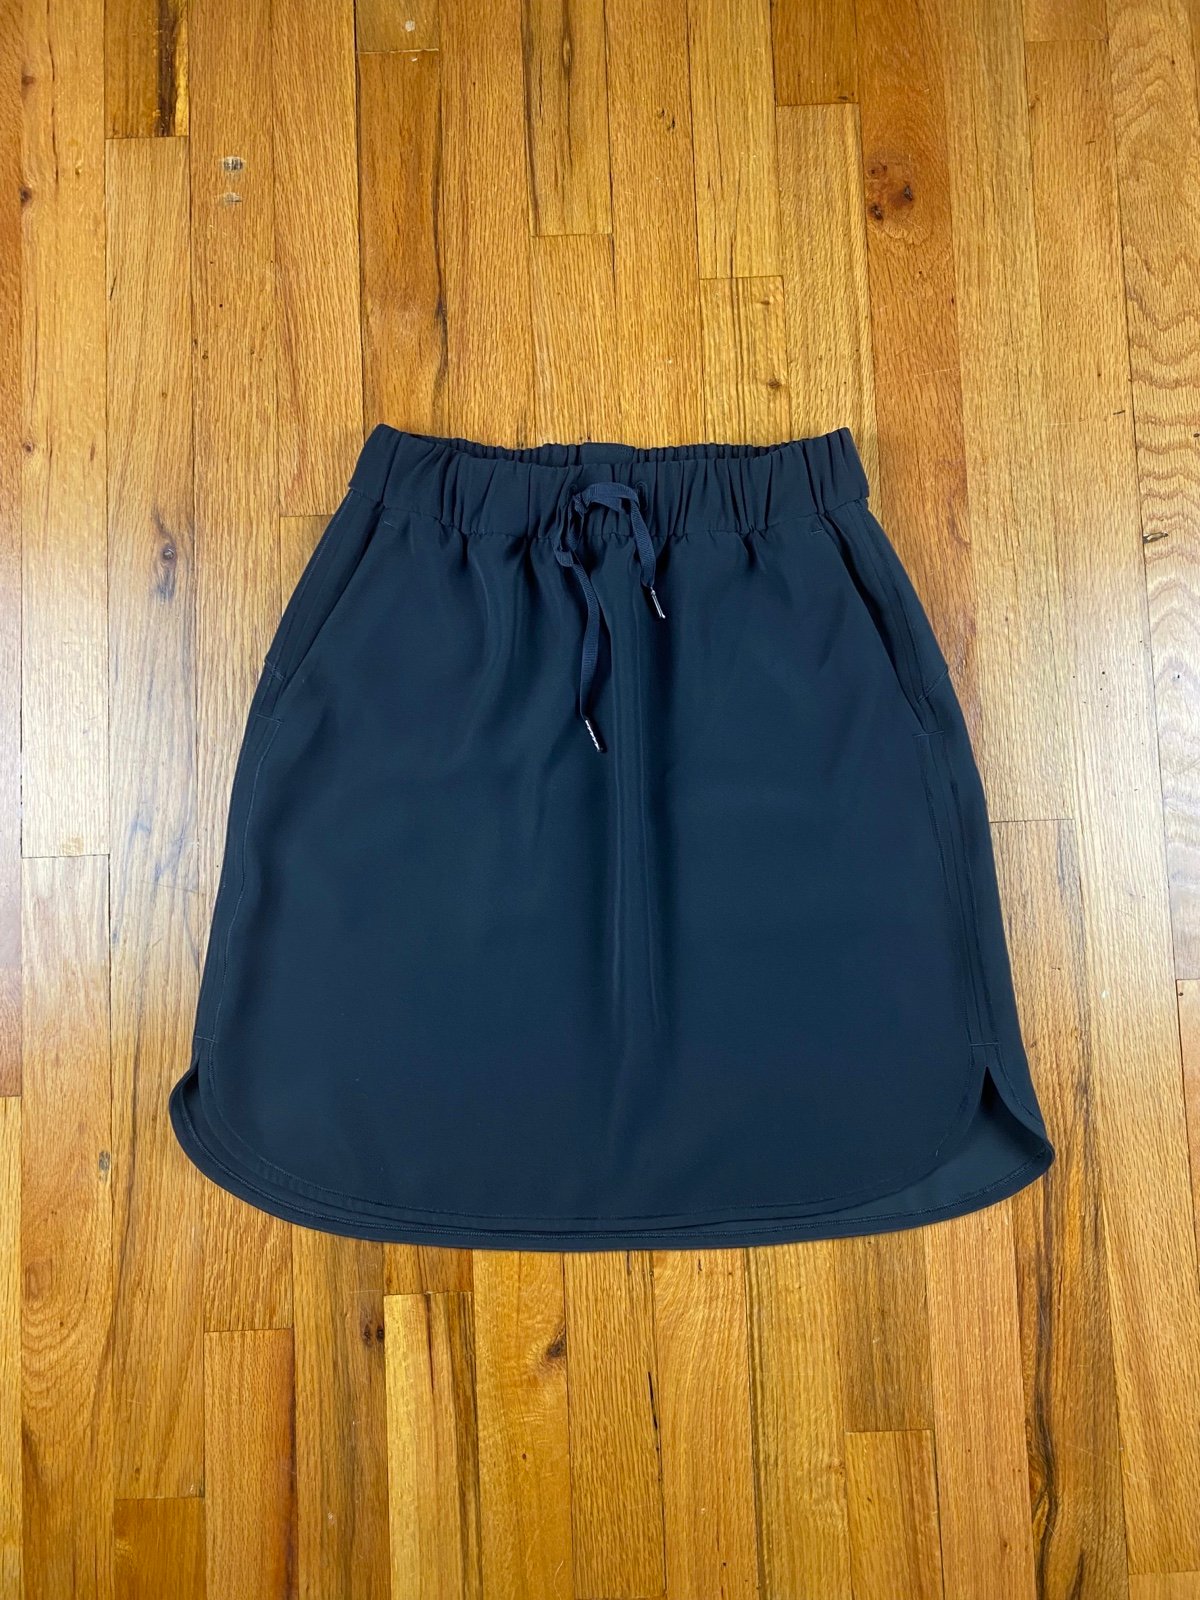 The Best Seller Lululemon On the Fly Skirt Woven Size 8 Black hO1lleg3N Cheap